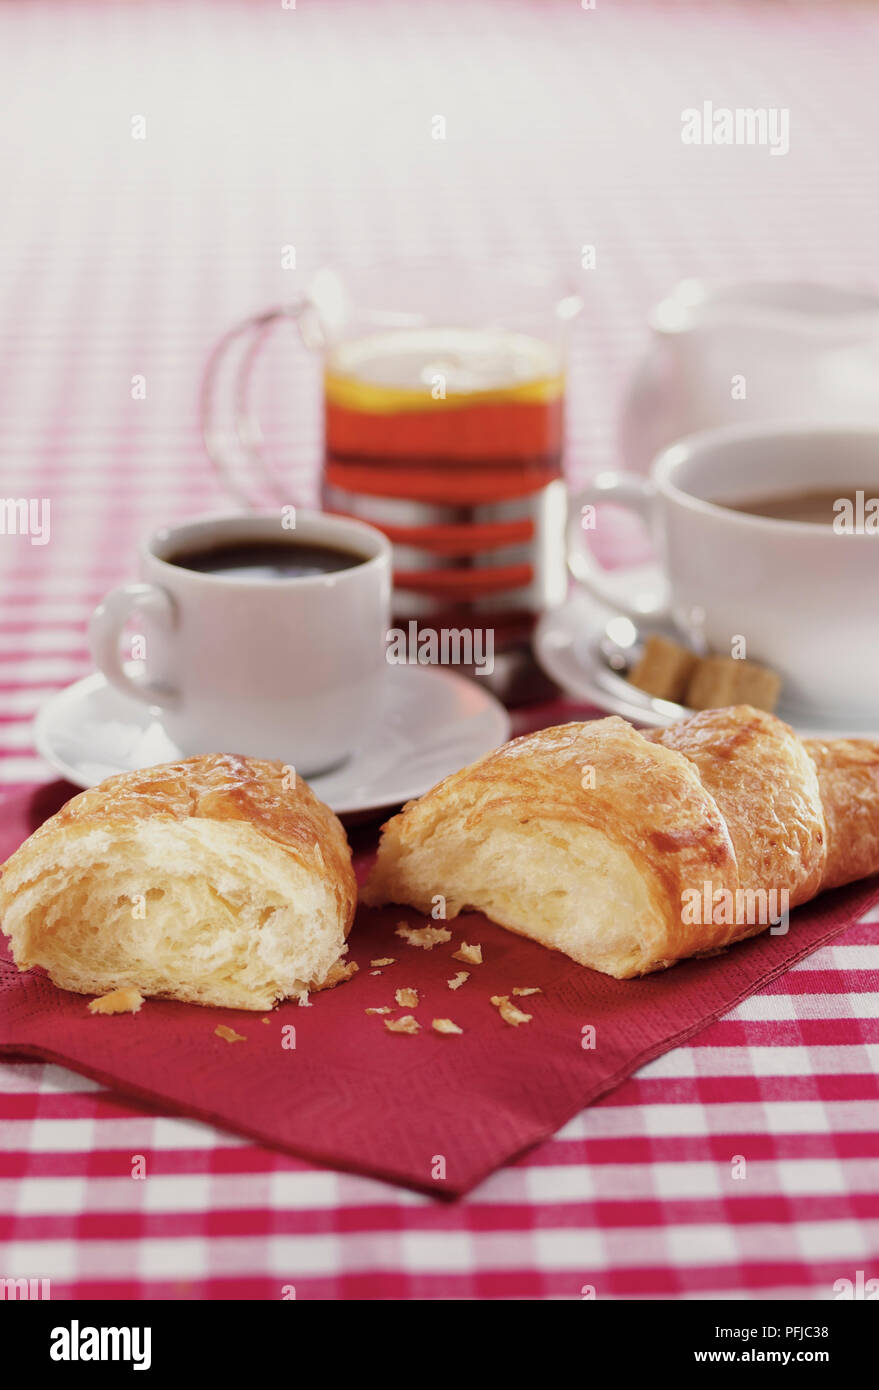 Croissant rotto in metà, una tazza di caffè espresso, una tazza di caffè e un bicchiere di tè e la brocca del latte, disteso sul tovagliolo rosso e verificata la tovaglia, close-up Foto Stock